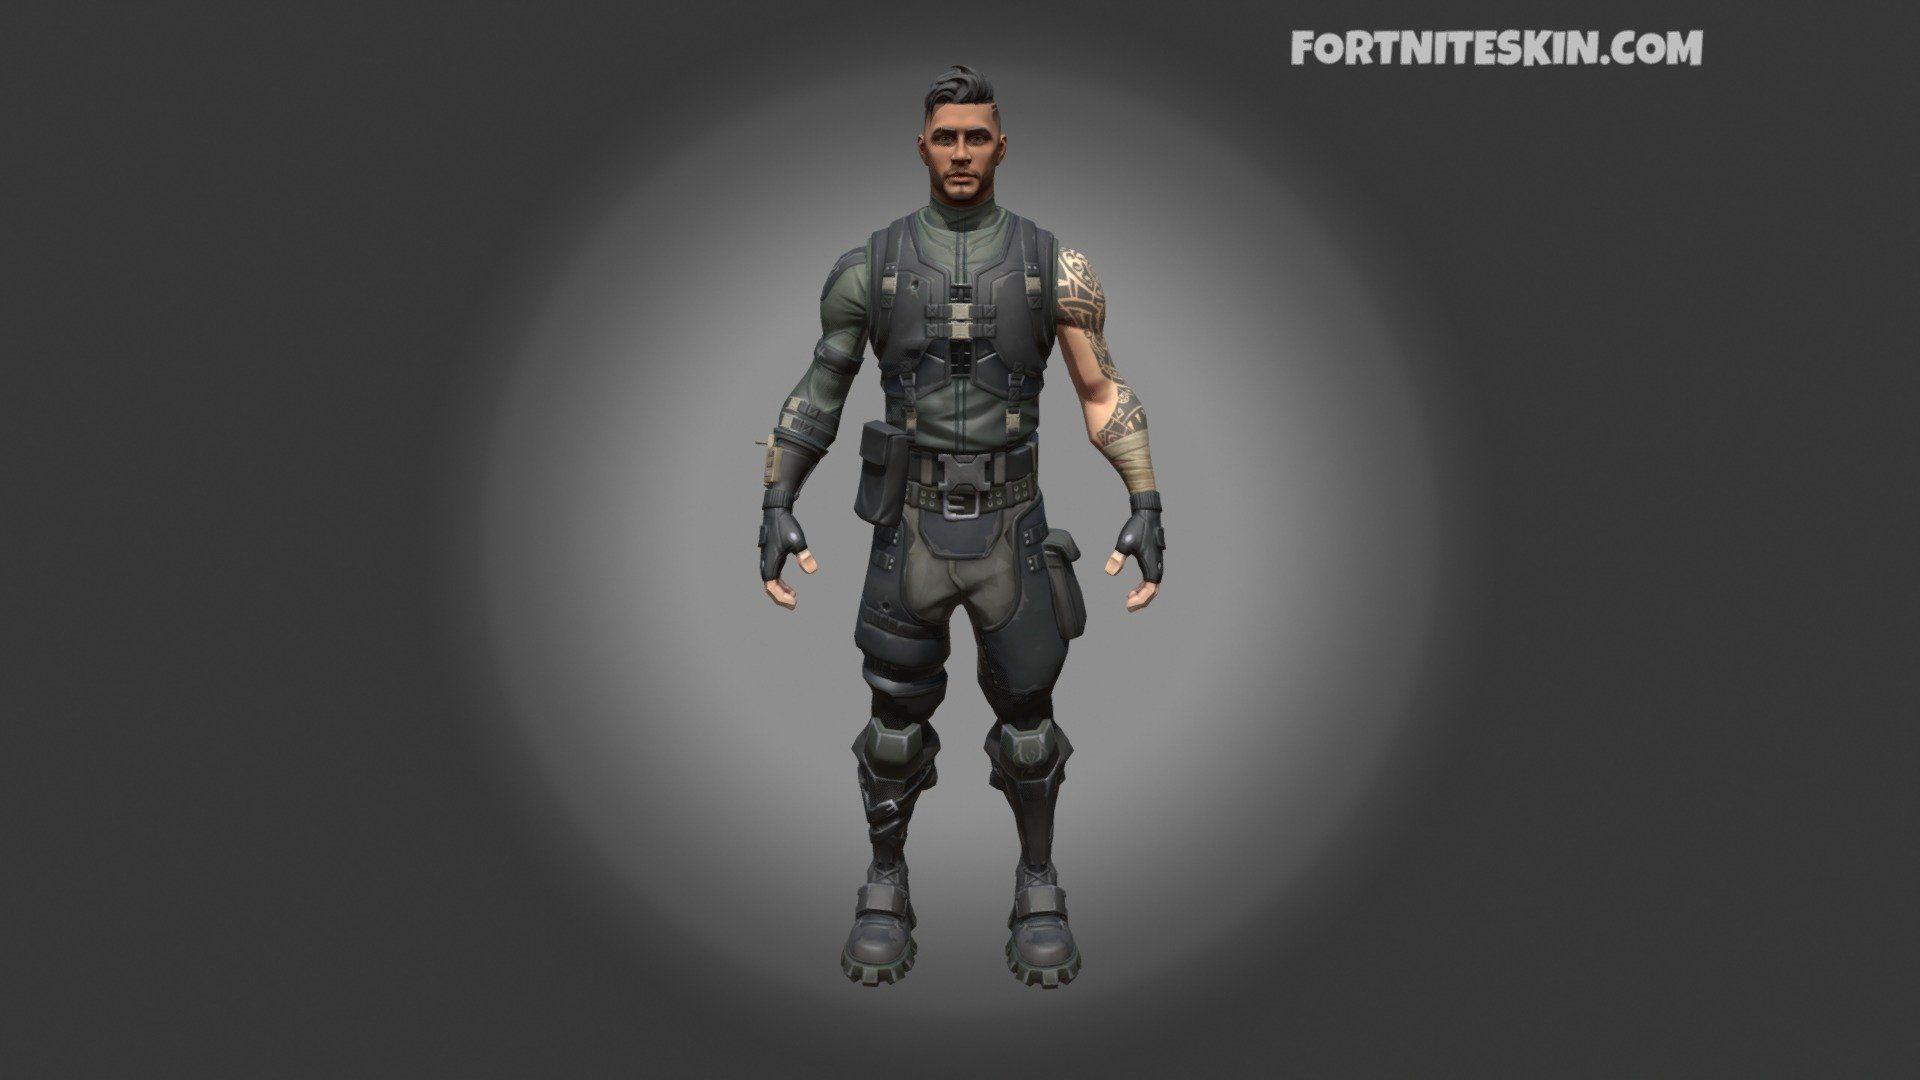 FORTNITE Outfit Squad Leader model by FortniteSkin.com